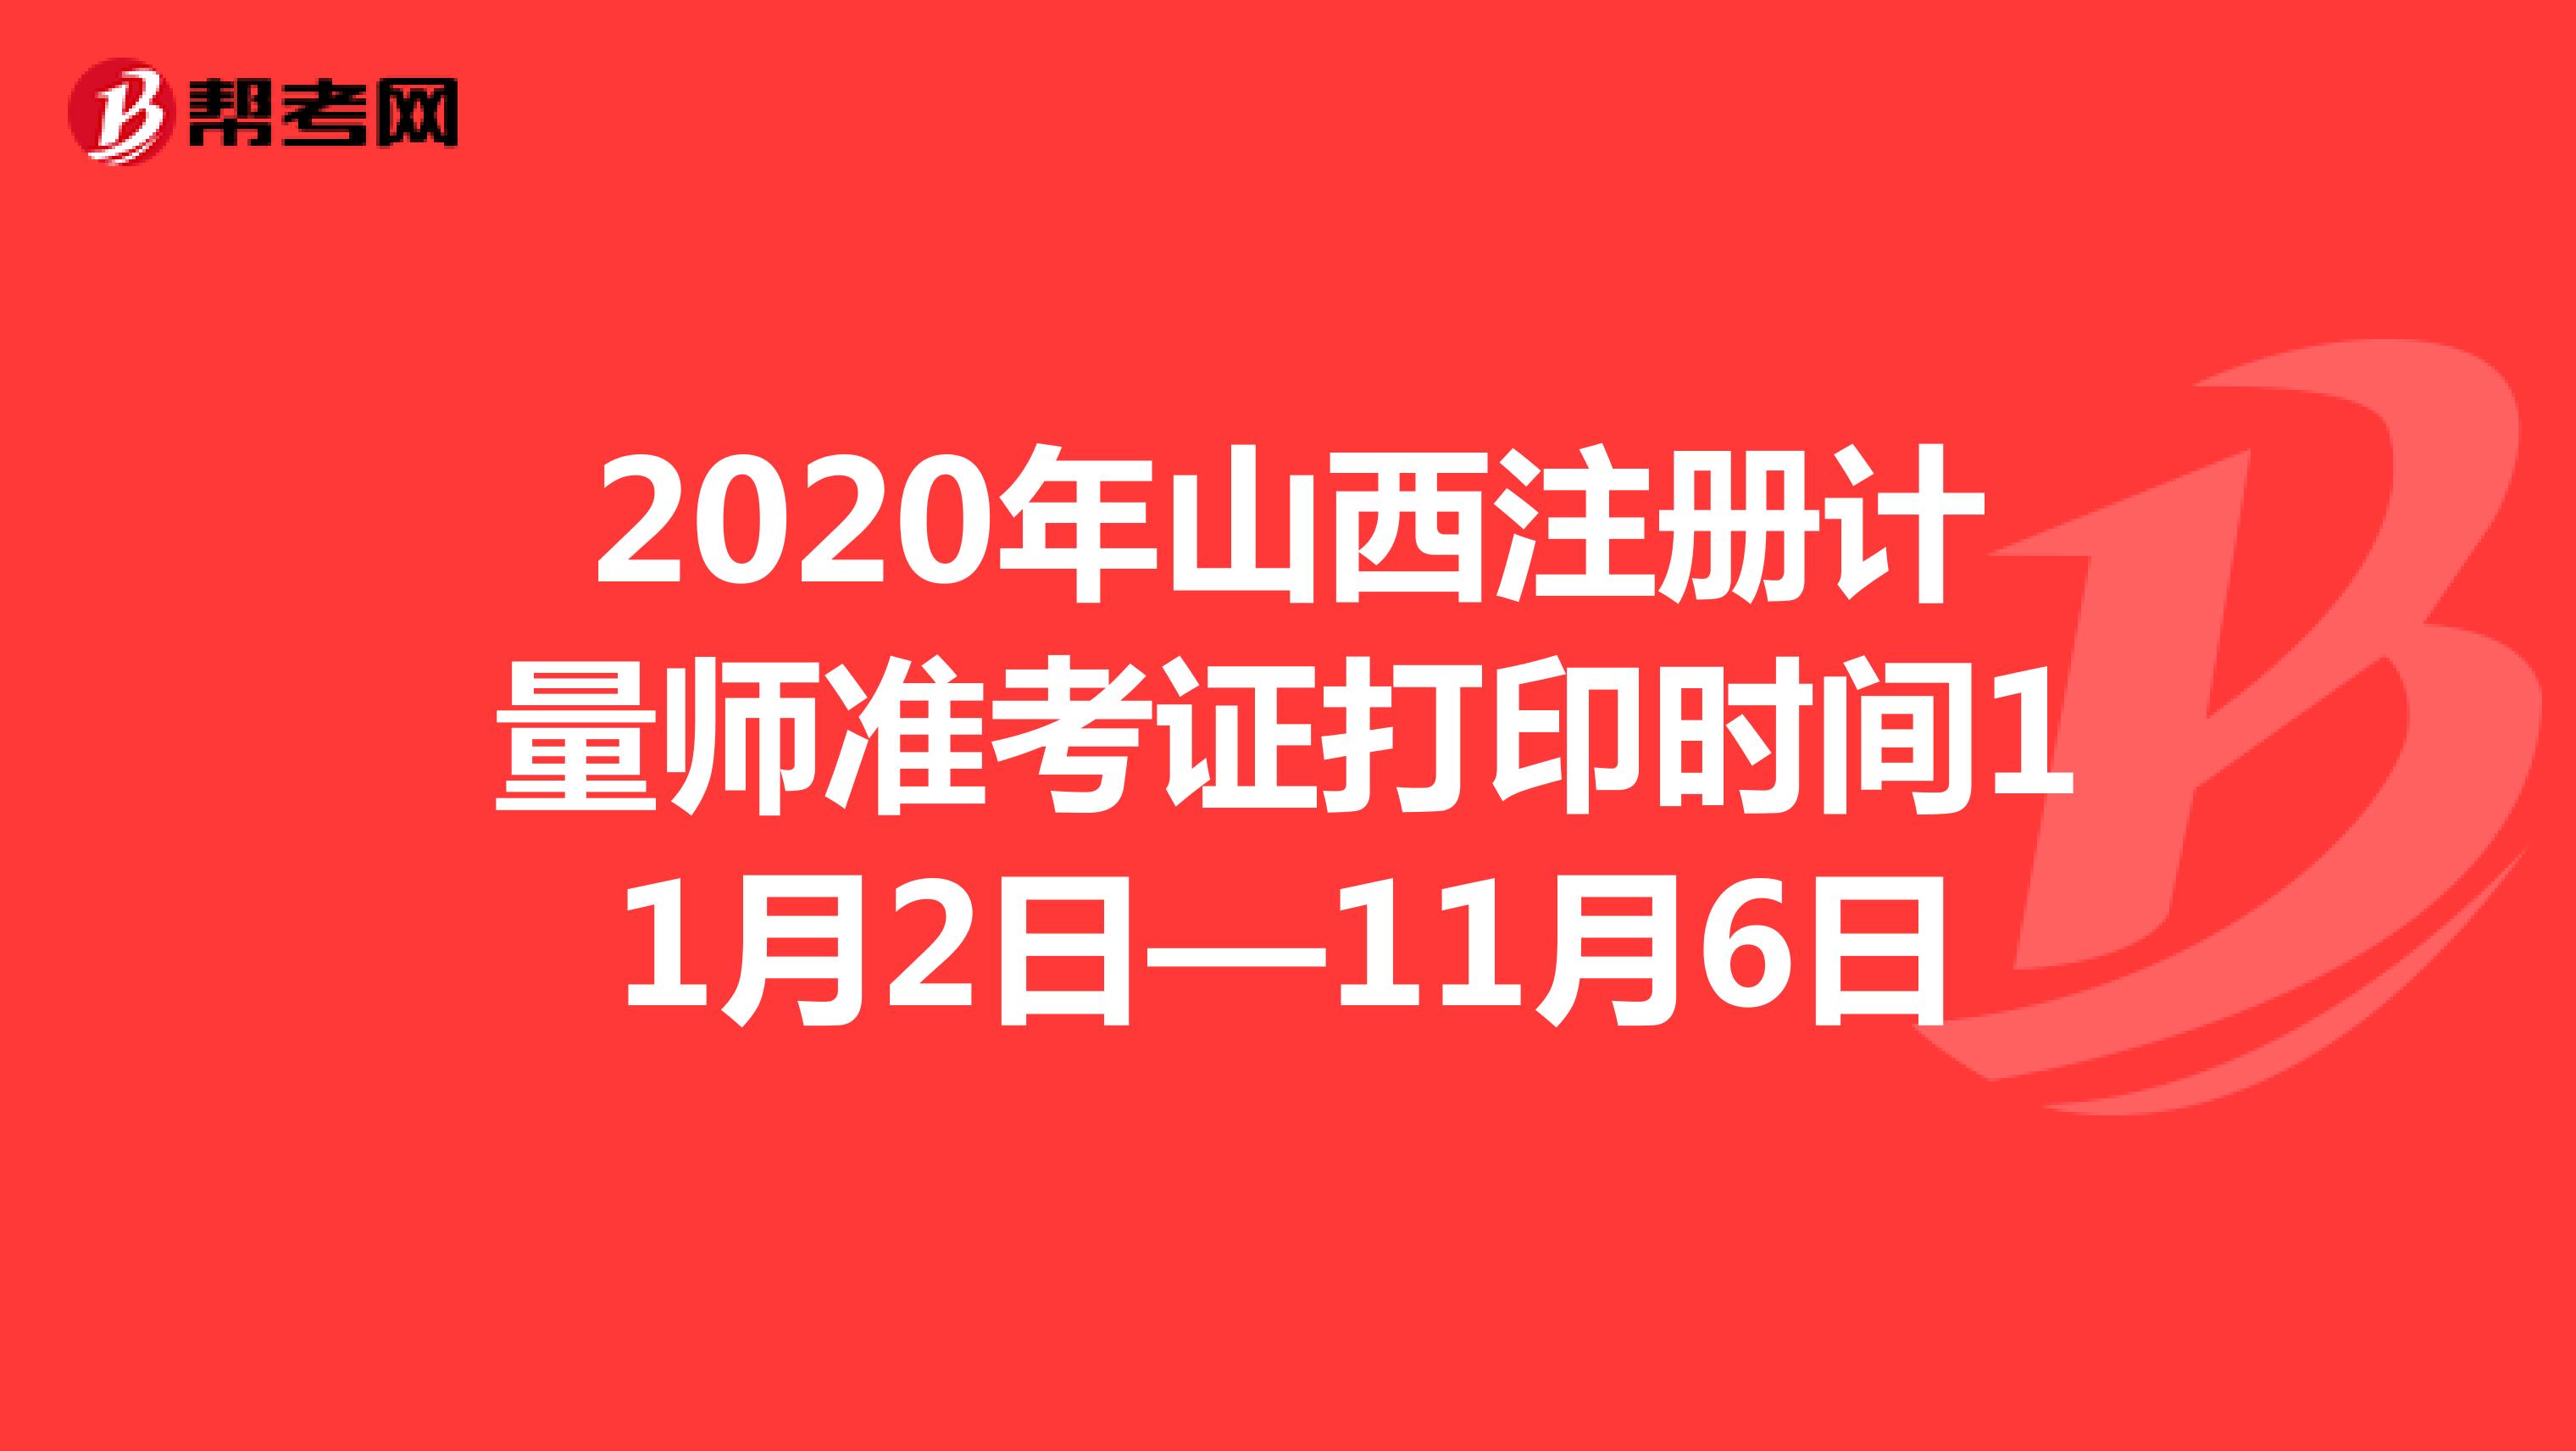 2020年山西注册计量师准考证打印时间11月2日—11月6日